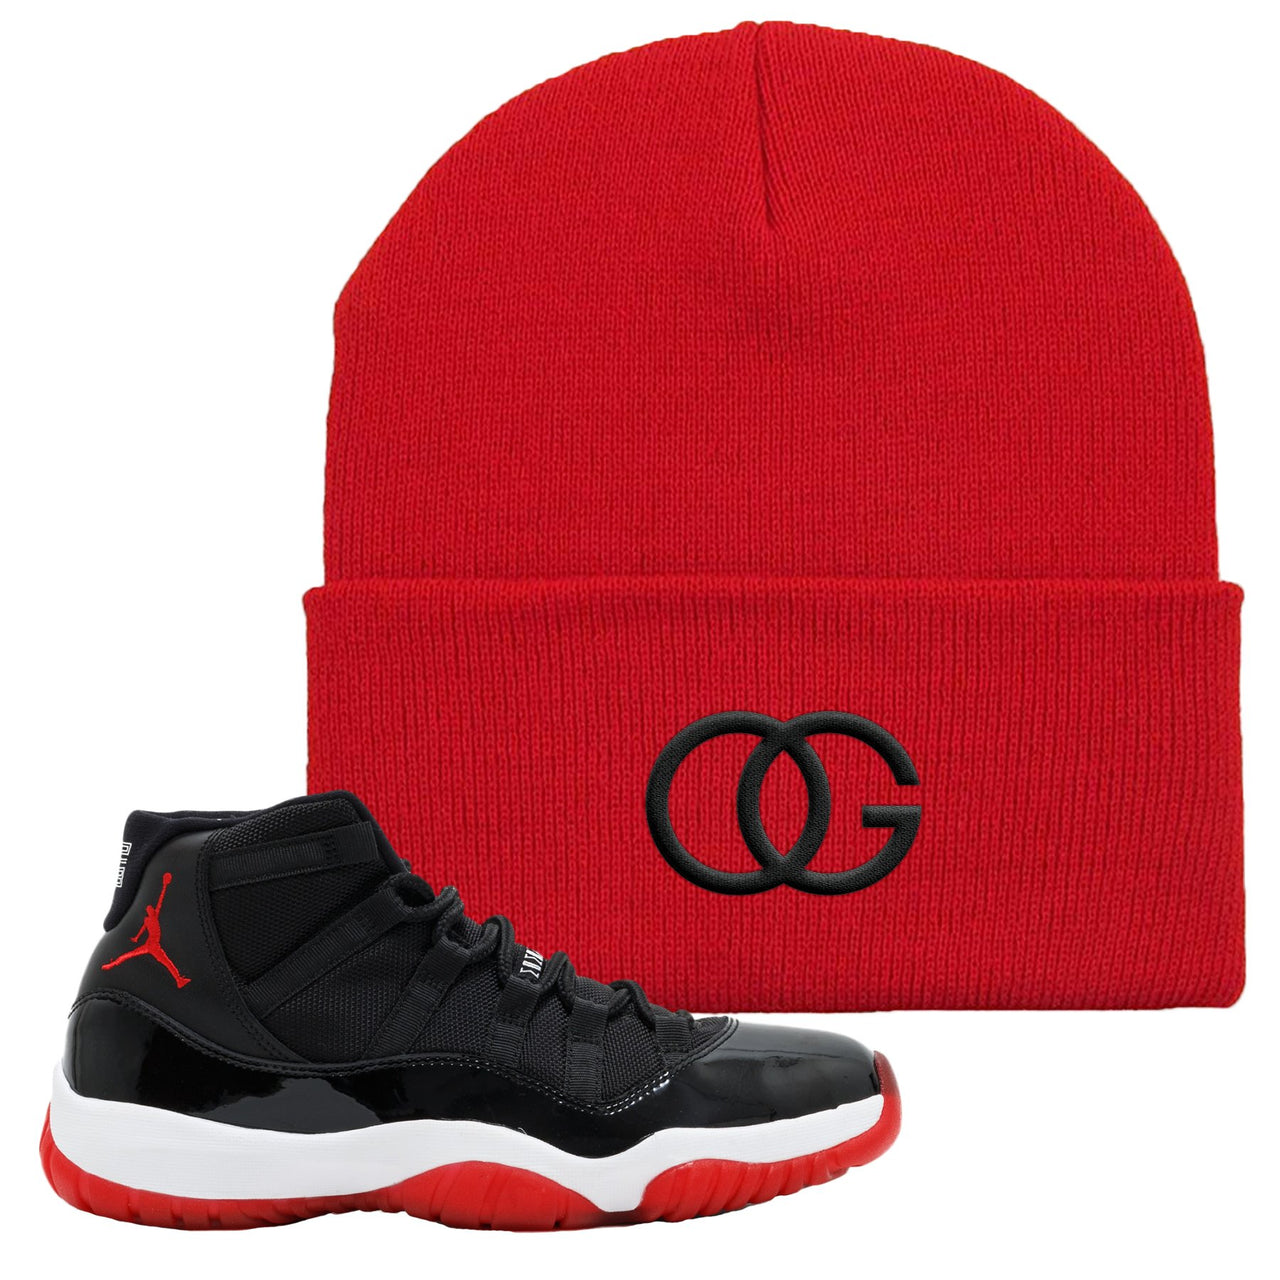 Jordan 11 Bred OG Red Sneaker Hook Up Beanie